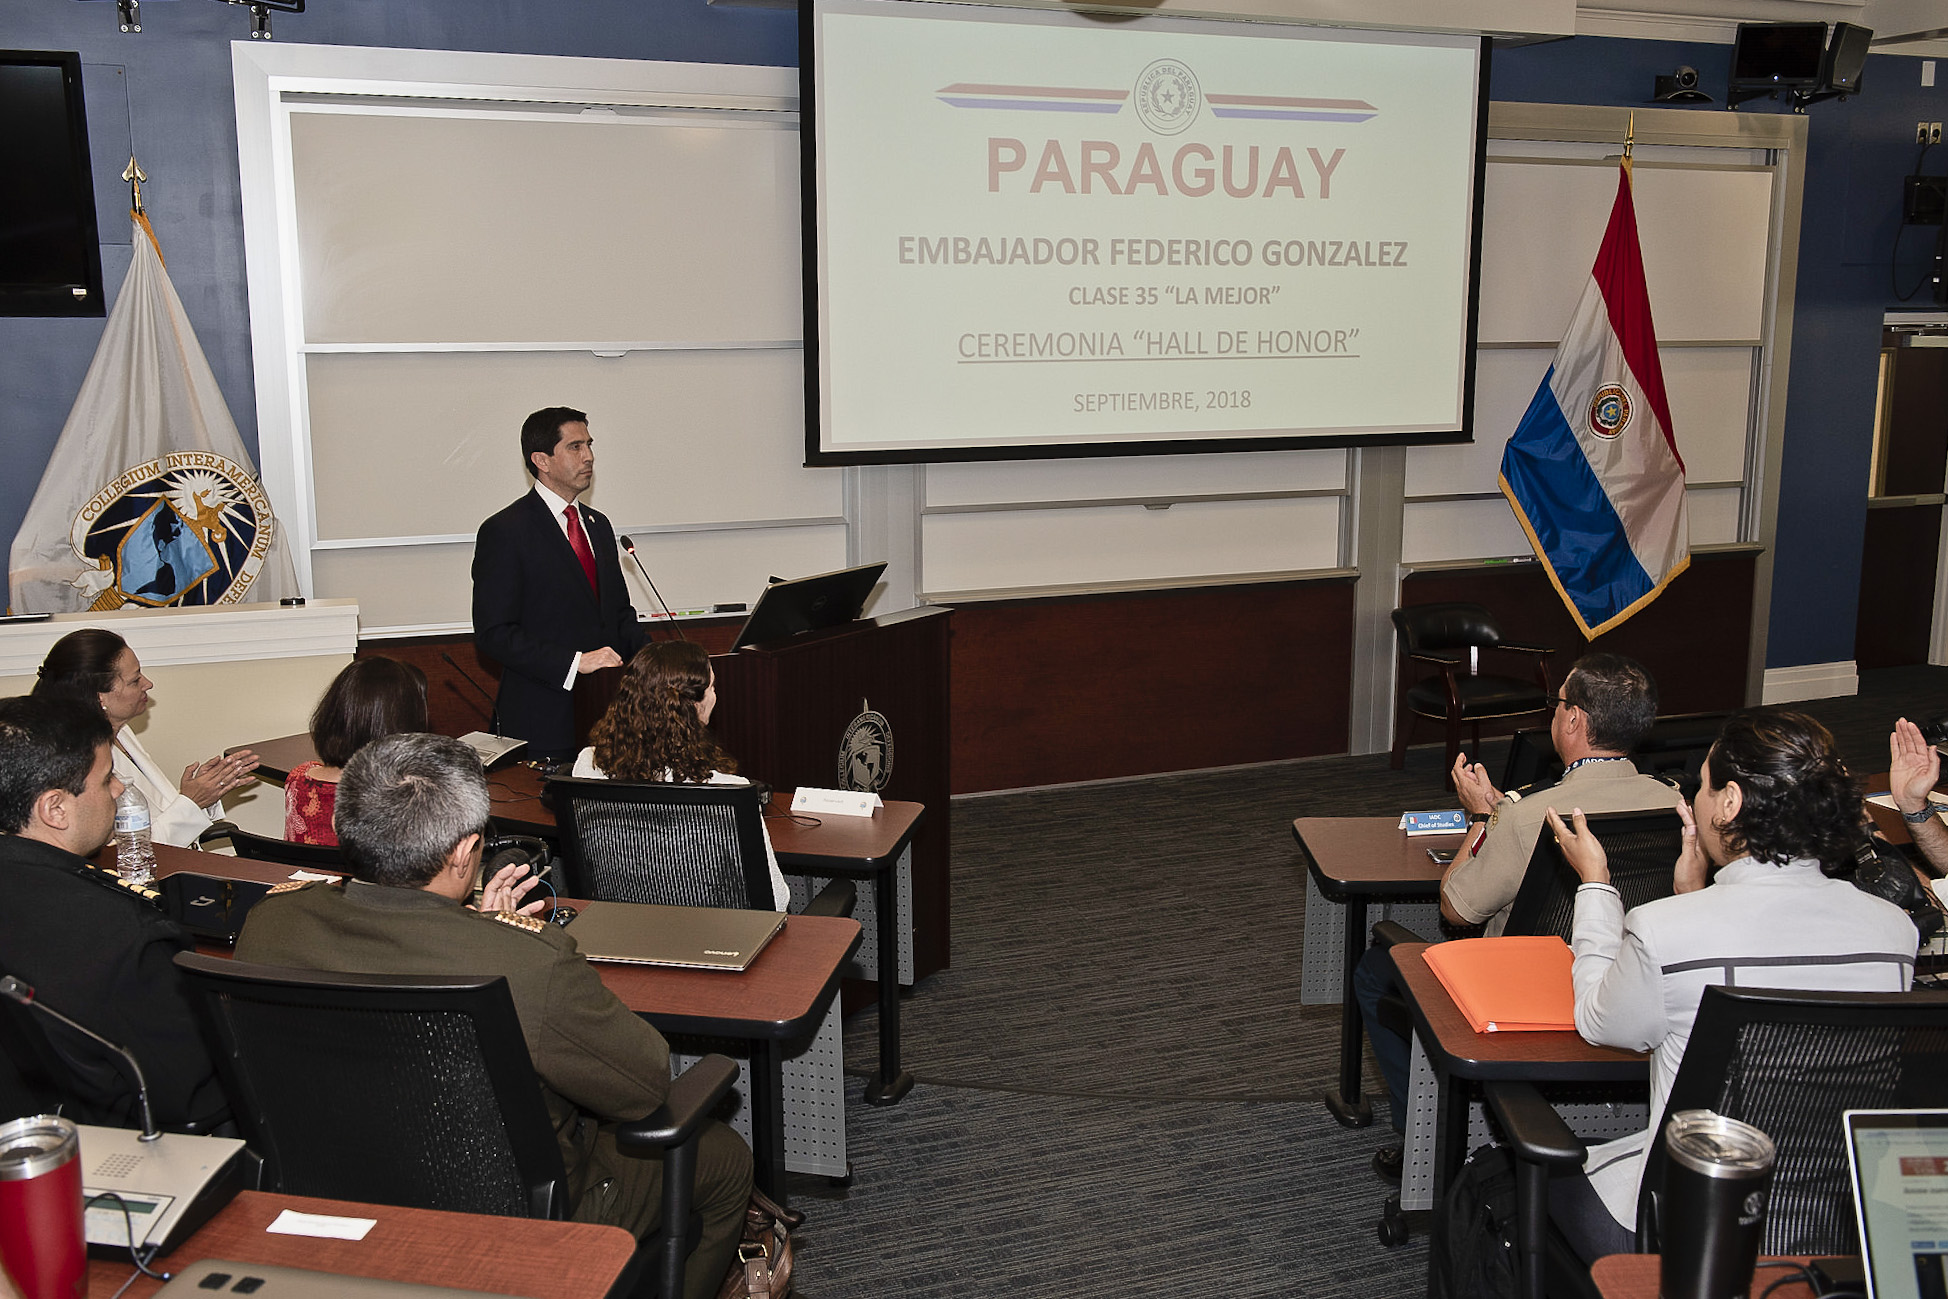 Embajador Federico González recibió homenaje y fue ubicado en el Hall de Honor del Colegio Interamericano de Defensa de los Estados Unidos